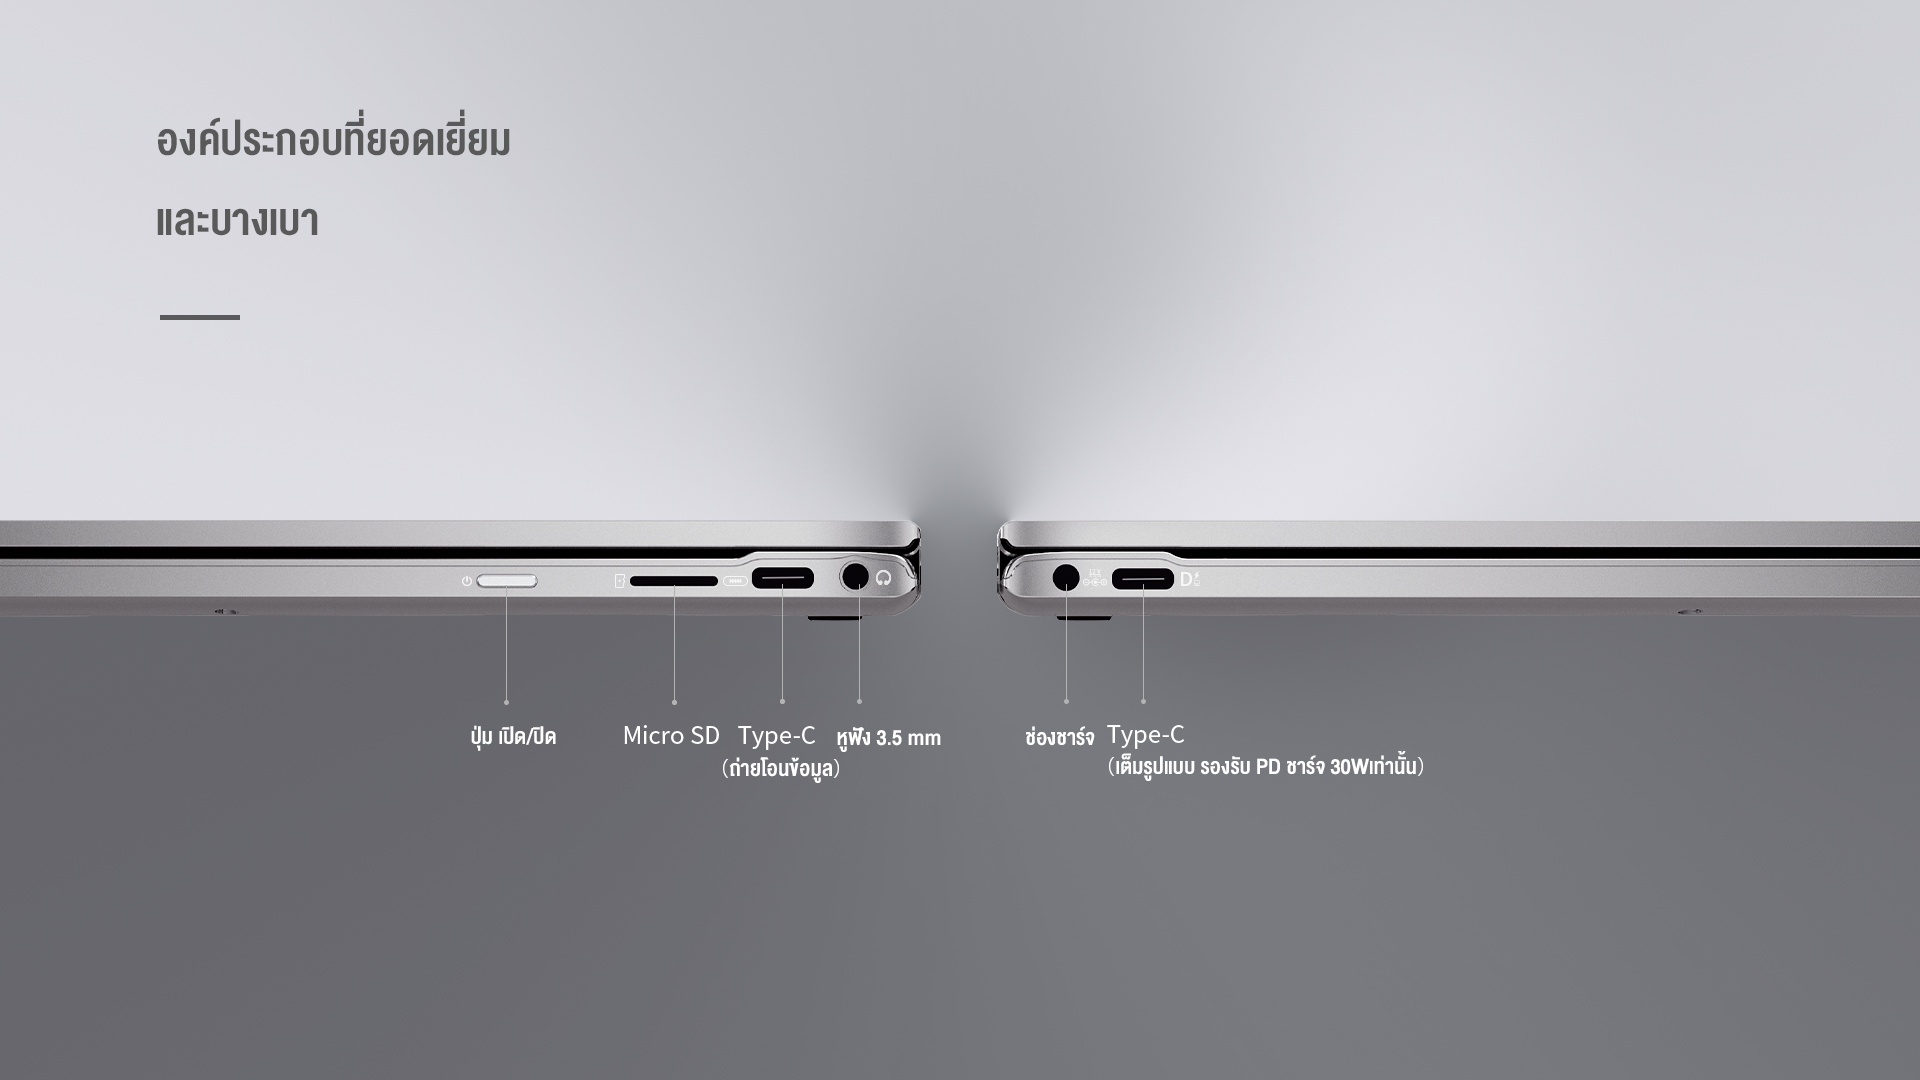 รูปภาพเพิ่มเติมเกี่ยวกับ BMAX MaxBook Y13 2-in-1 laptop หมุน 360 Yoga องศา จอ 13.3 นิ้ว Multi-touch Ultrabook Windows 10 Pro ลิขสิทธิ์แท้ Intel Celeron Quad-Core 8GB RAM 256GB SSD โน๊คบุ๊ค